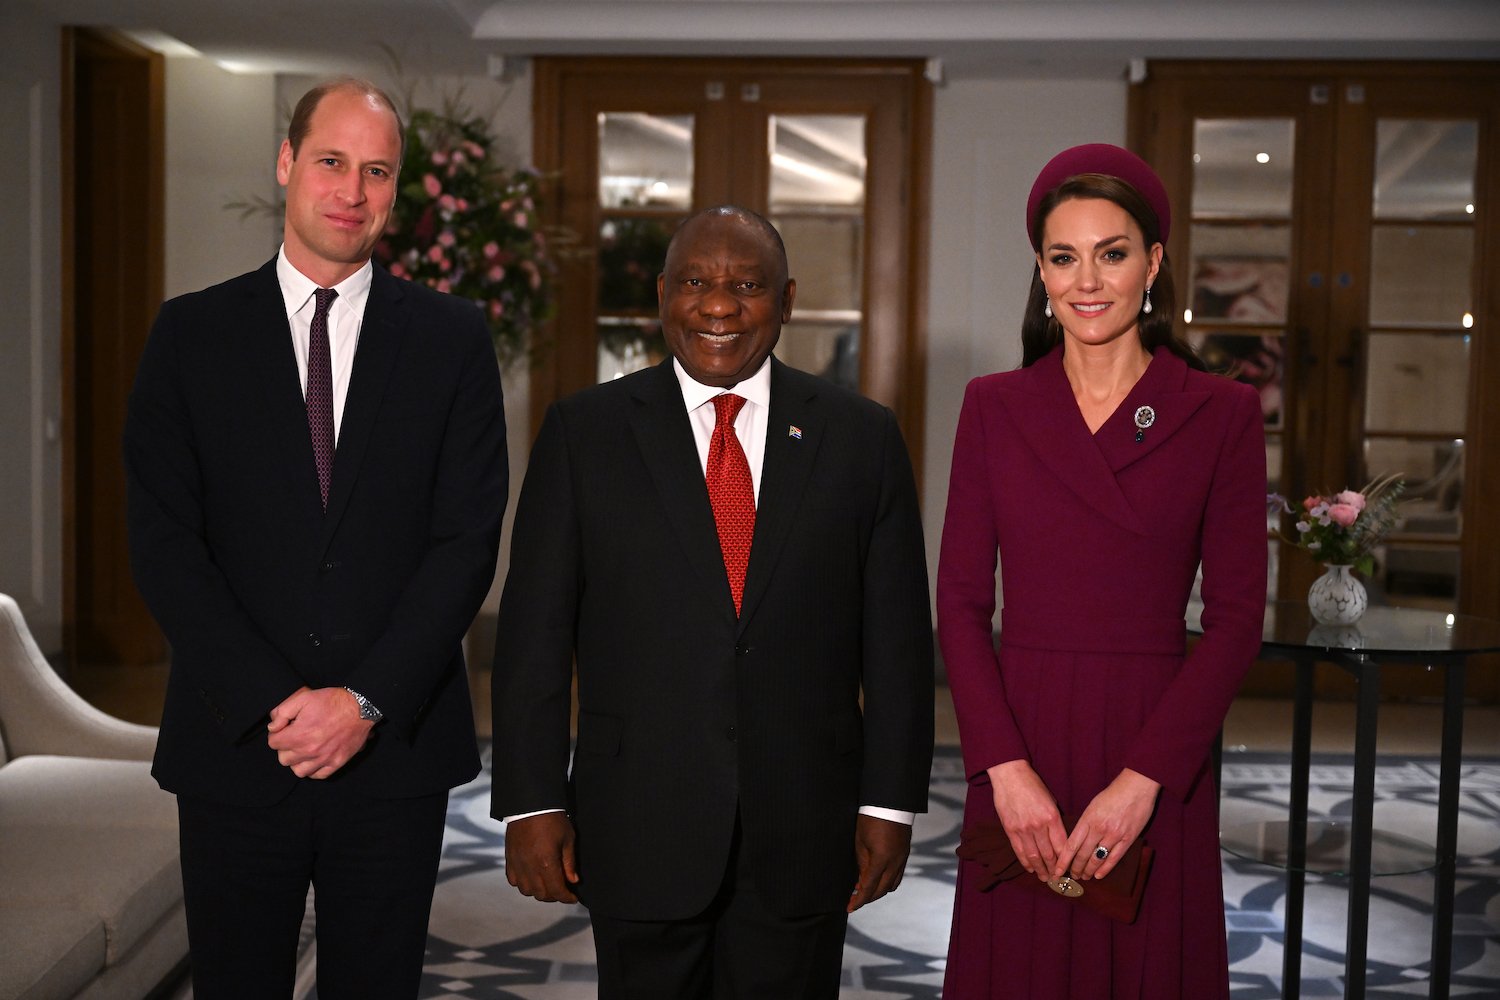 Chuyên gia ngôn ngữ cơ thể chỉ ra động tác tinh tế của Kate Middleton đã cho phép Camilla Parker Bowles tỏa sáng trong chuyến thăm cấp nhà nước